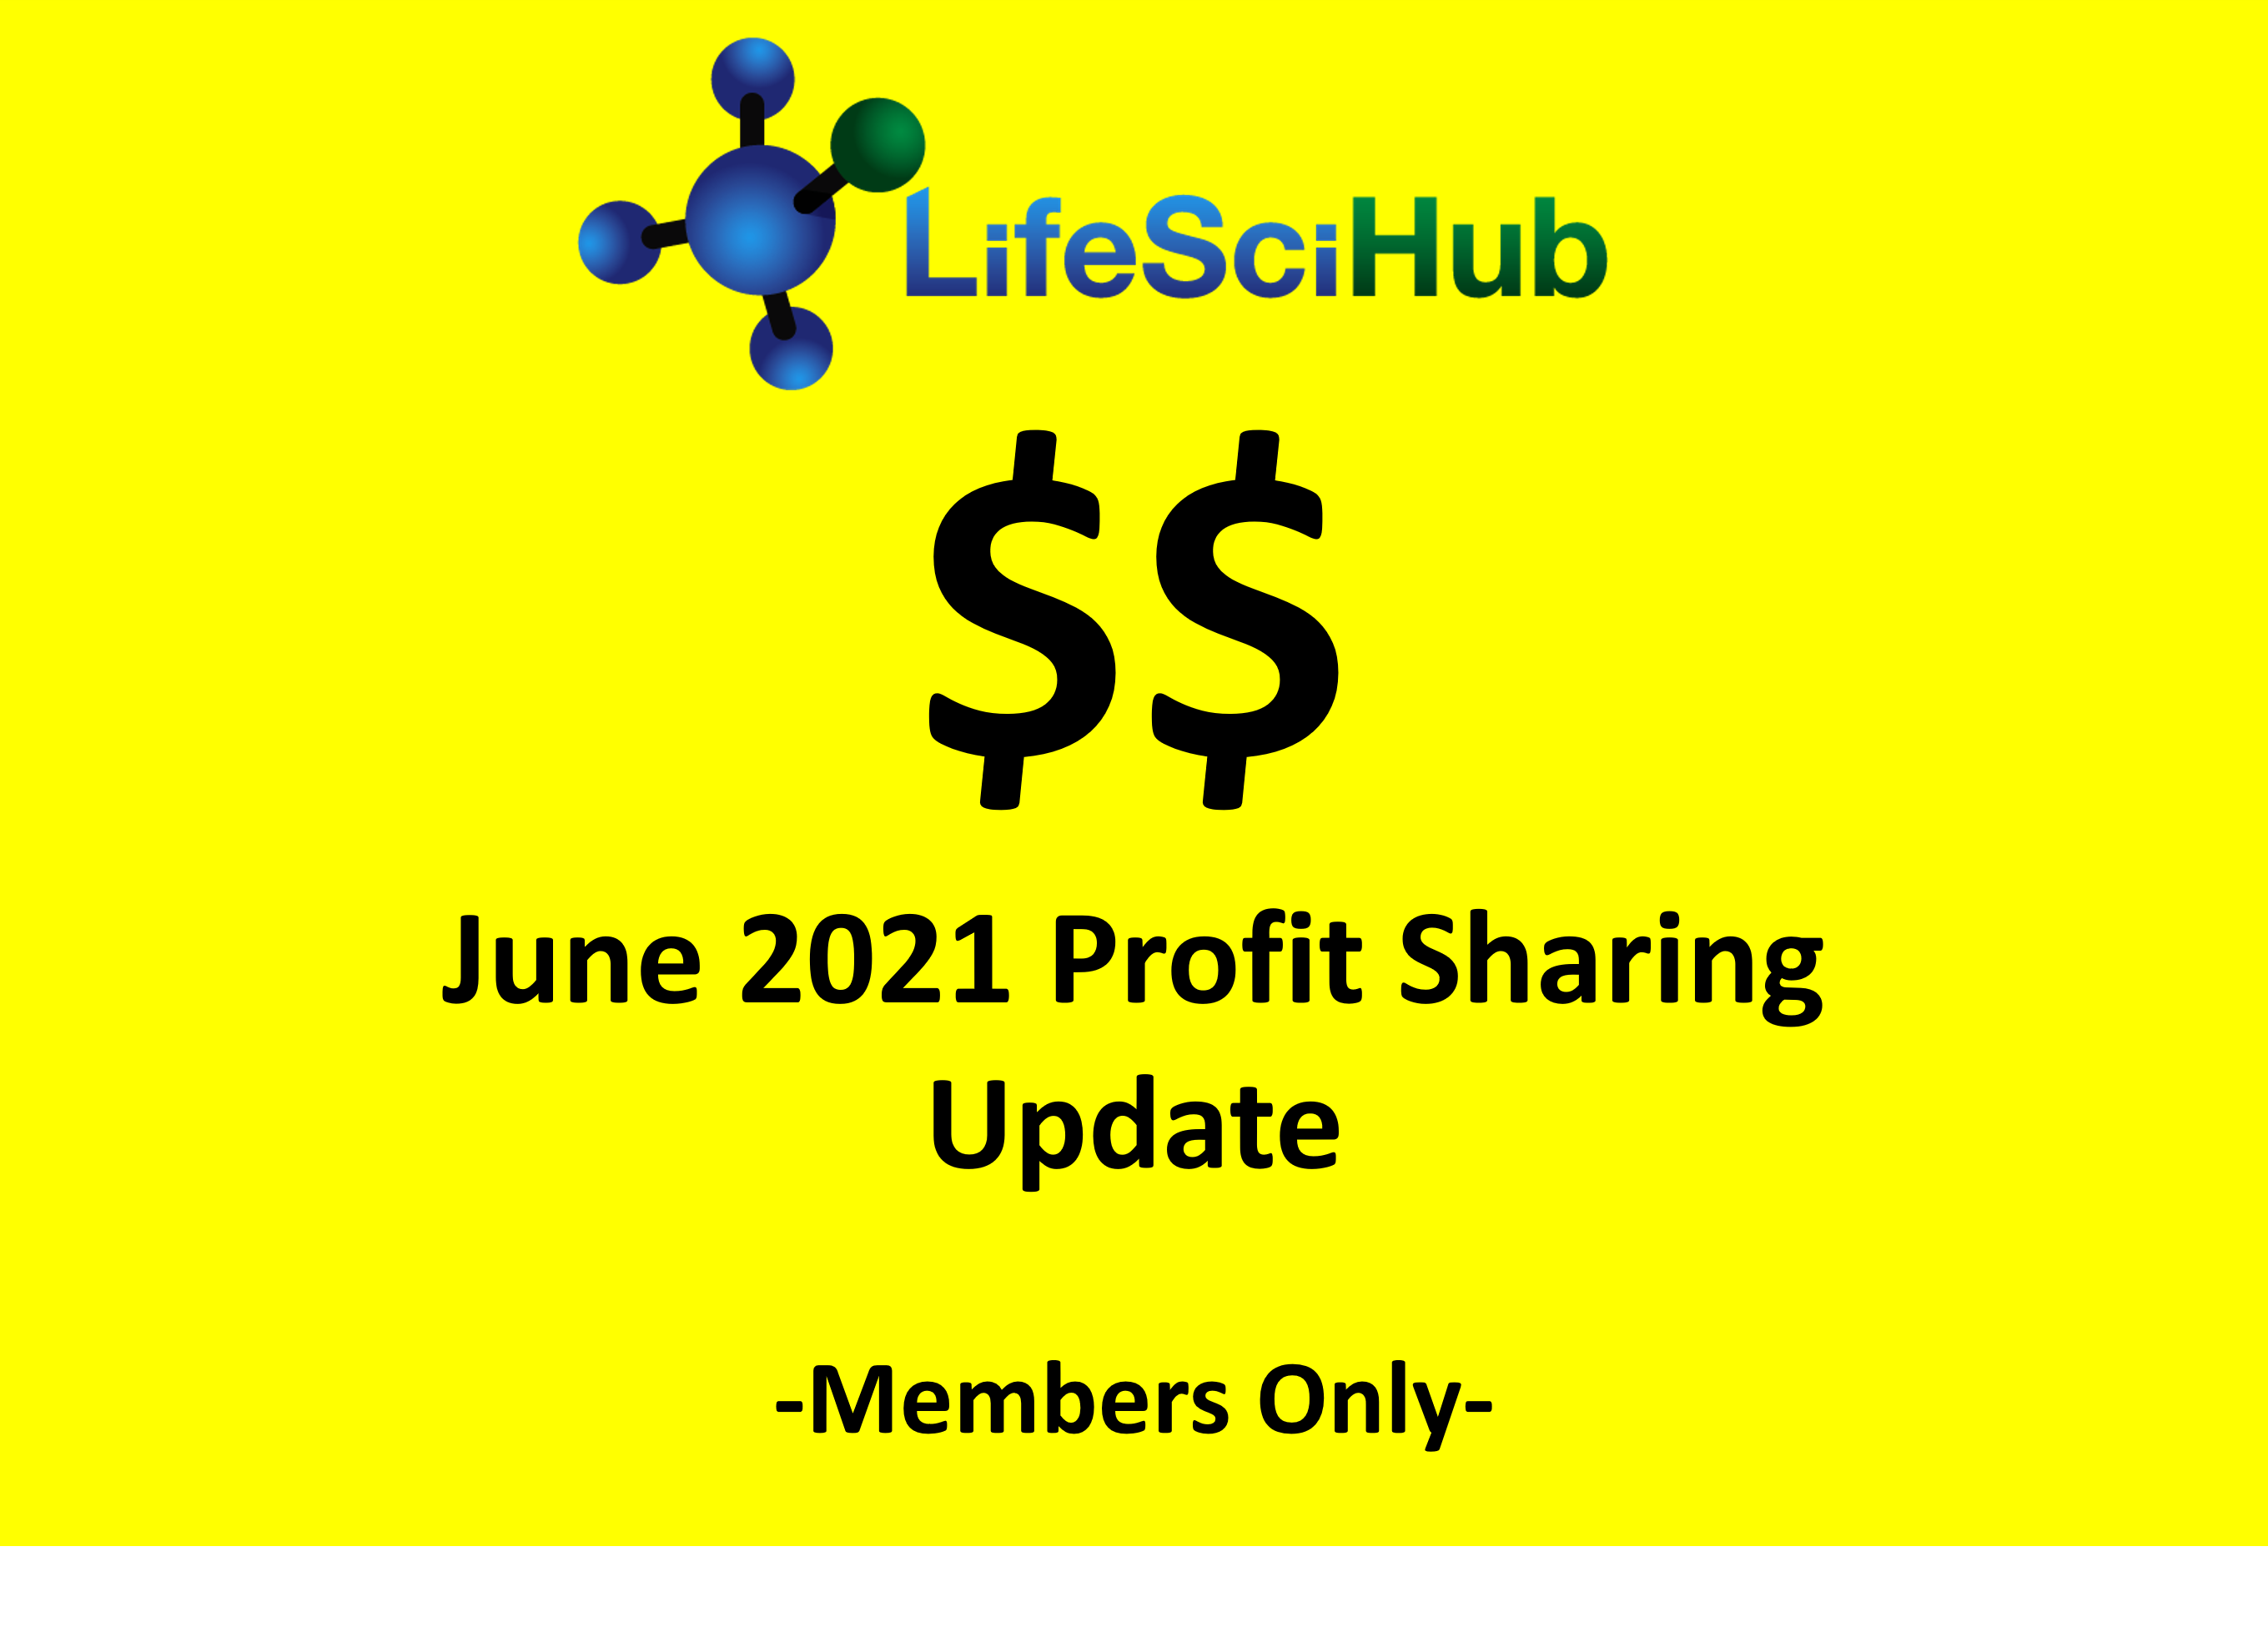 LifeSciHub June 2021 